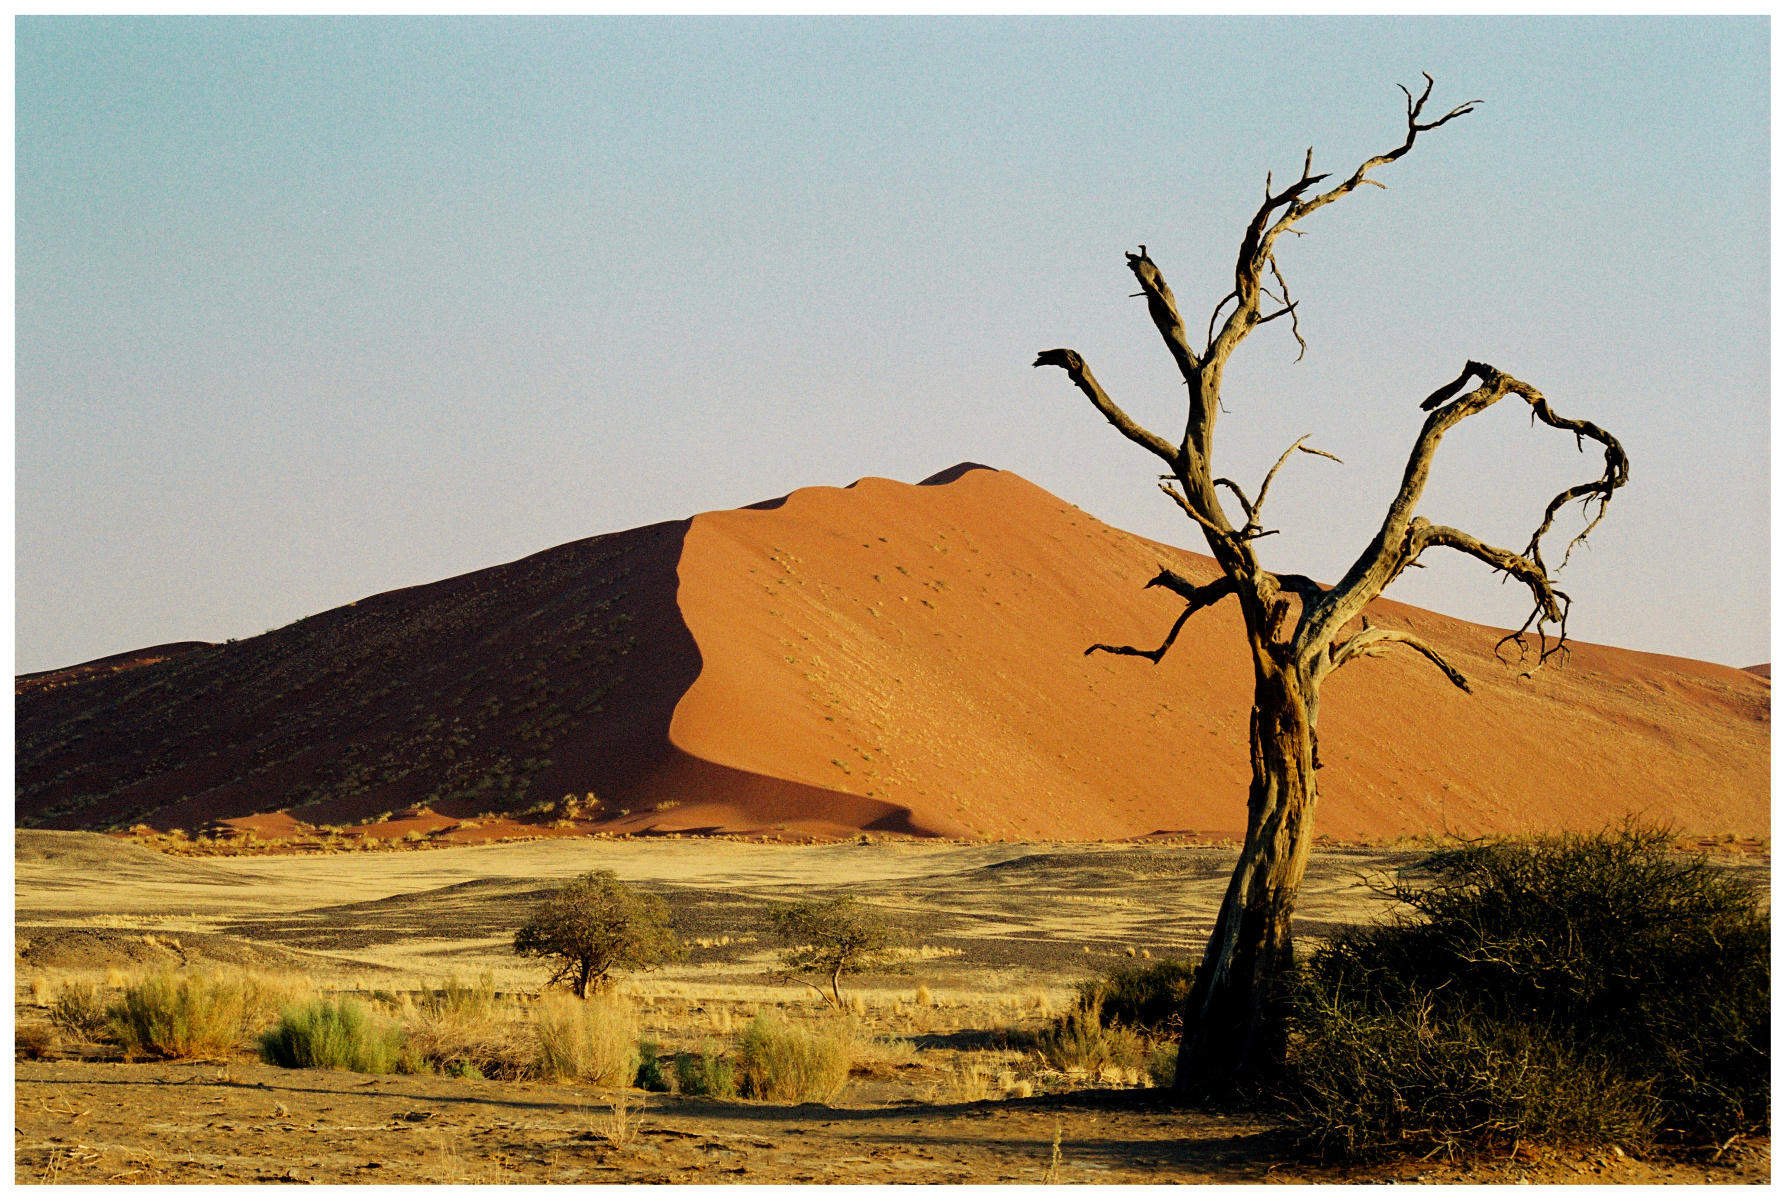 Vpoušti Namib